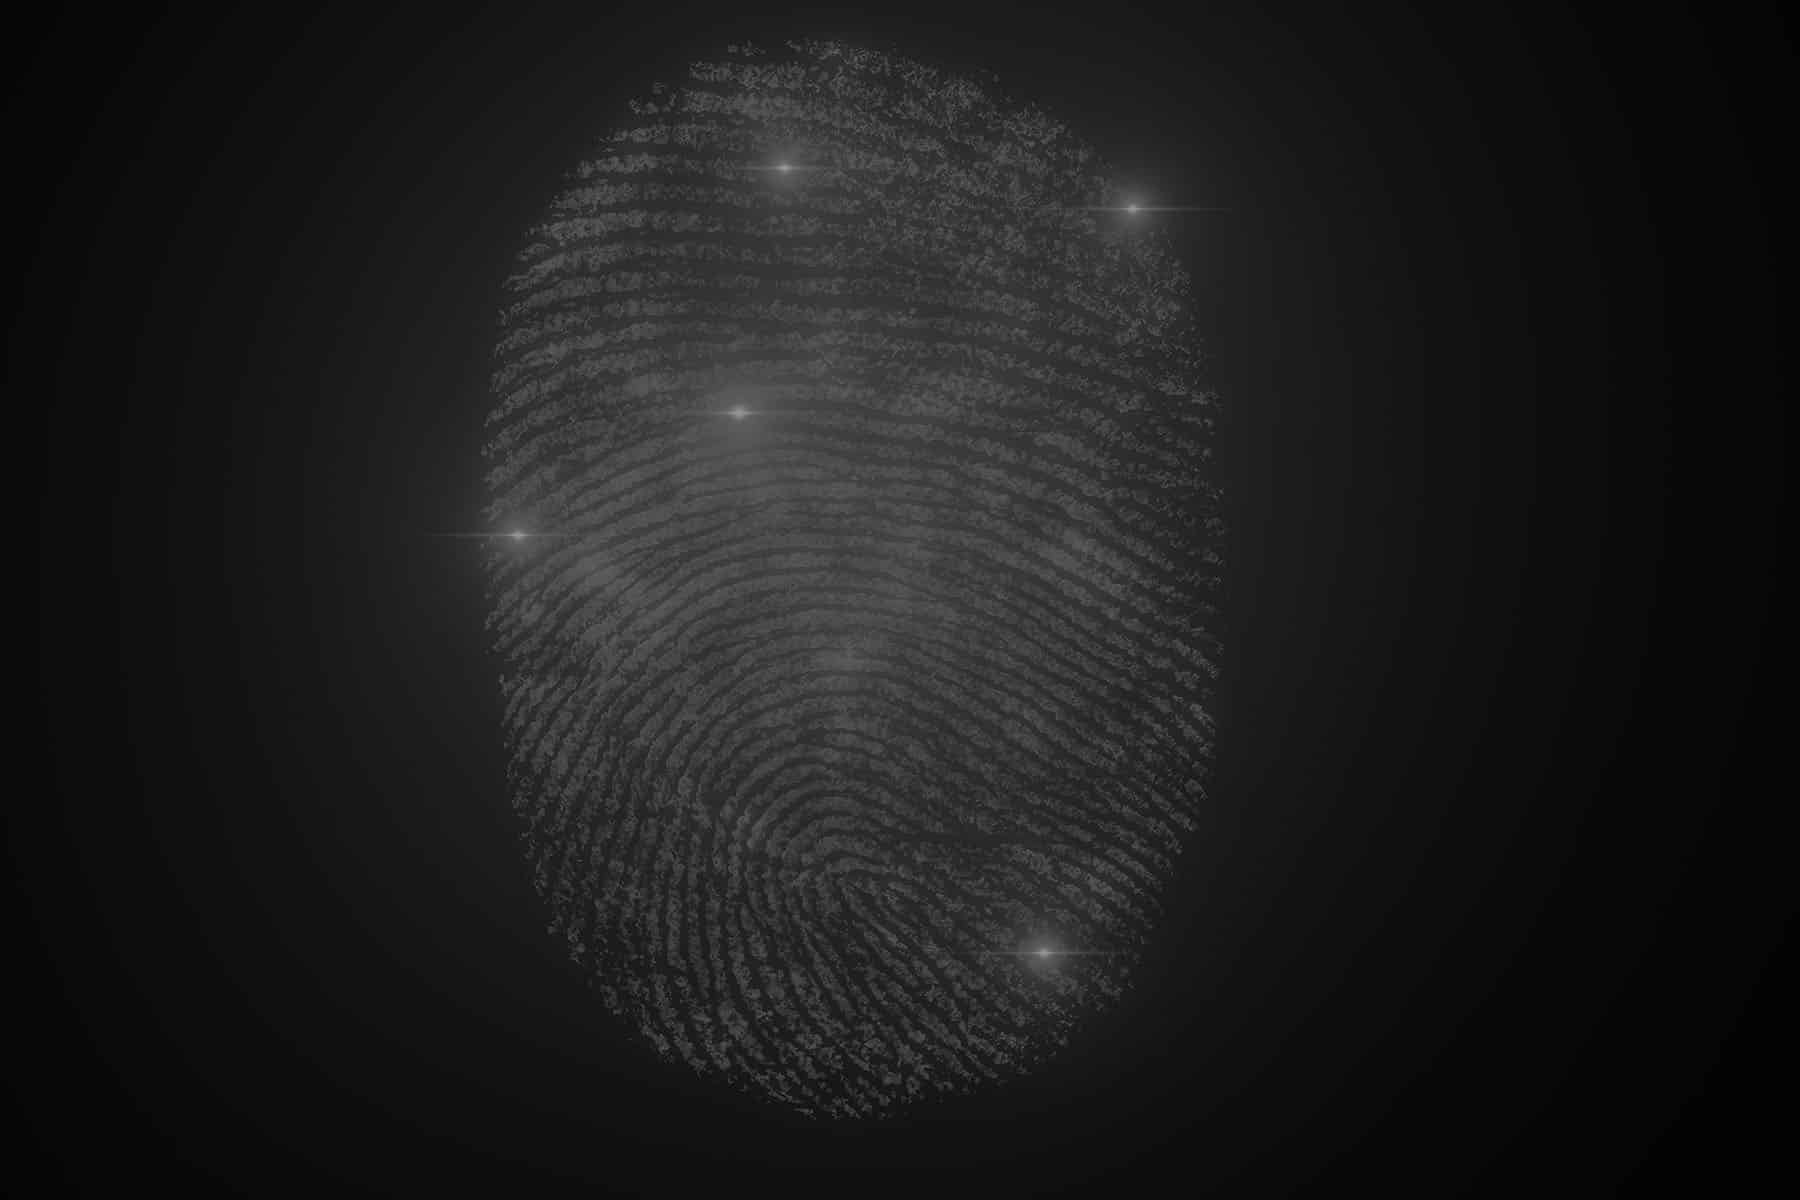 Zutrittssystem per Fingerprint, Biometrische Erkennungssysteme